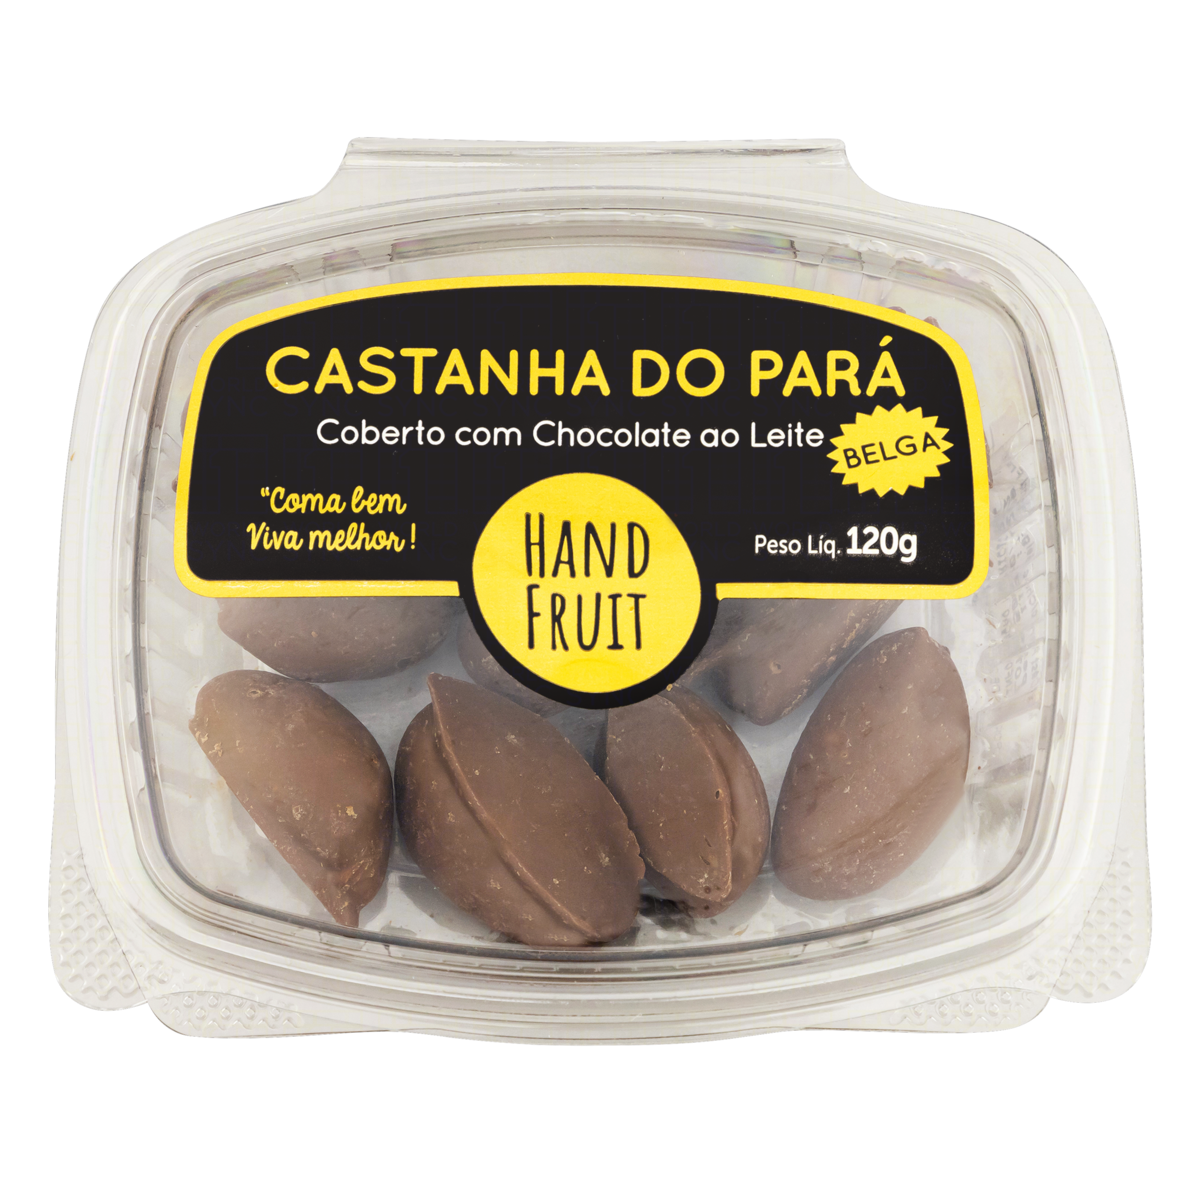 7898656140675 - CASTANHA-DO-PARÁ COBERTURA CHOCOLATE AO LEITE BELGA HAND FRUIT POTE 120G